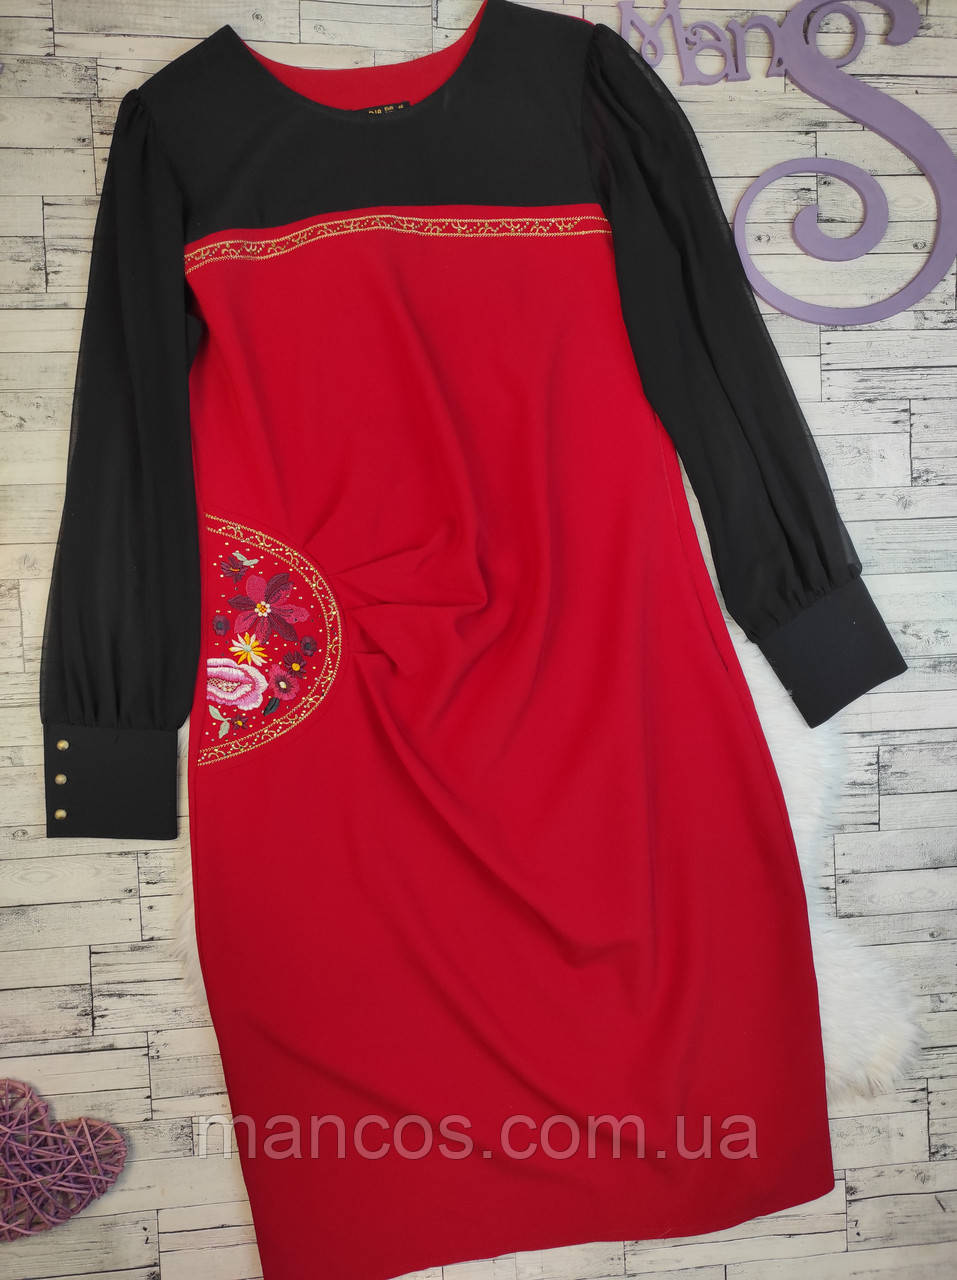 Жіноча сукня Dea Dia червона з чорним прикрашена вишивкою та стразами рукав шифон Розміри 48 L 52 XXL